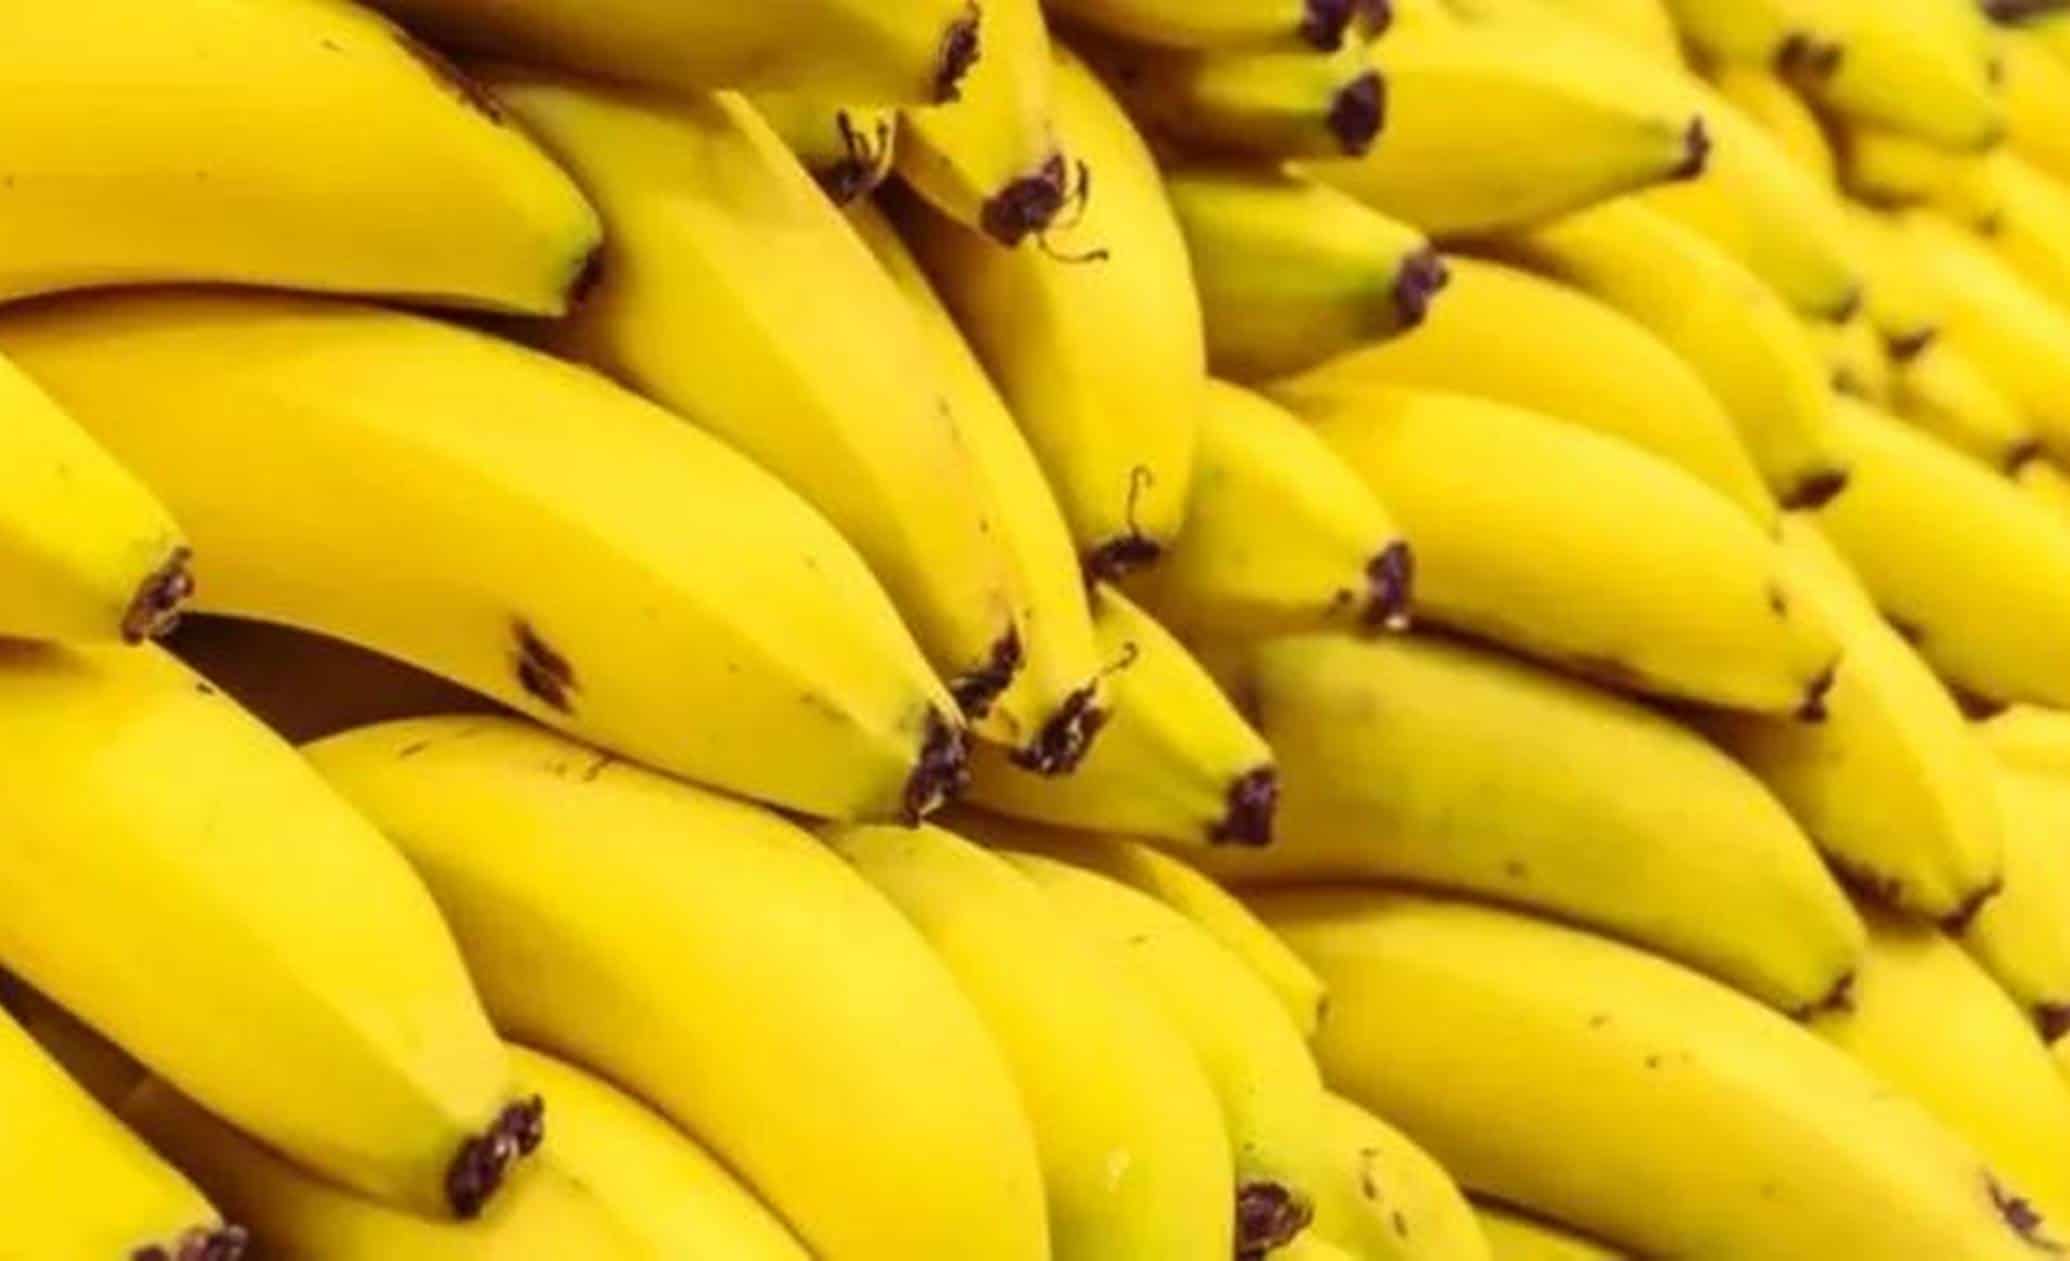 Descubra como amadurecer bananas verdes em uma hora sem perder os nutrientes